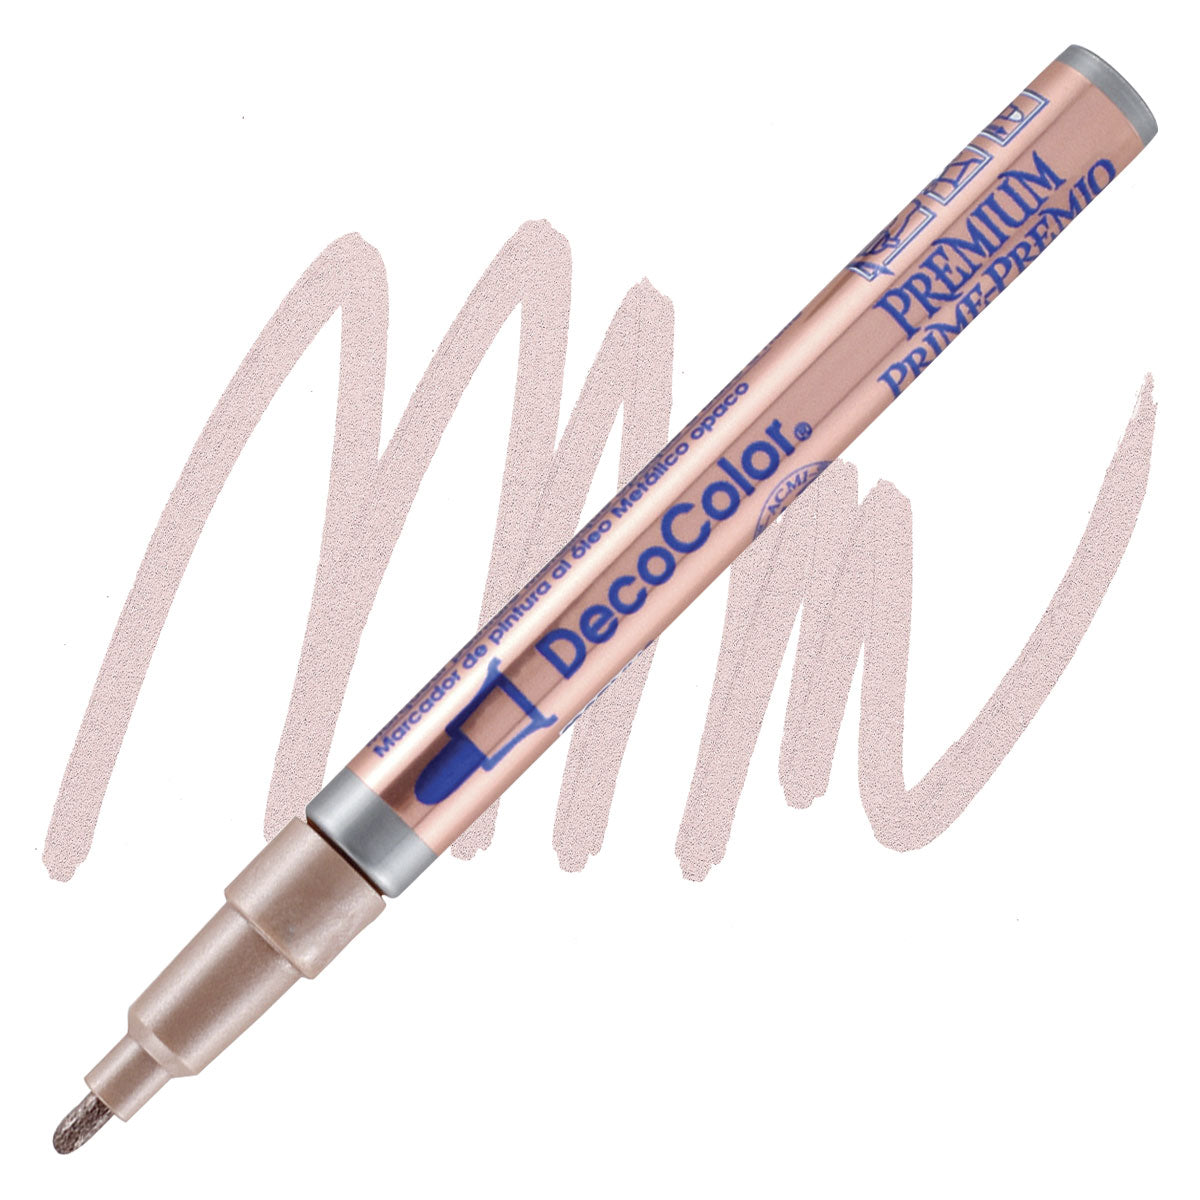 Decocolor Premium Paint Marker, fijne ronde punt